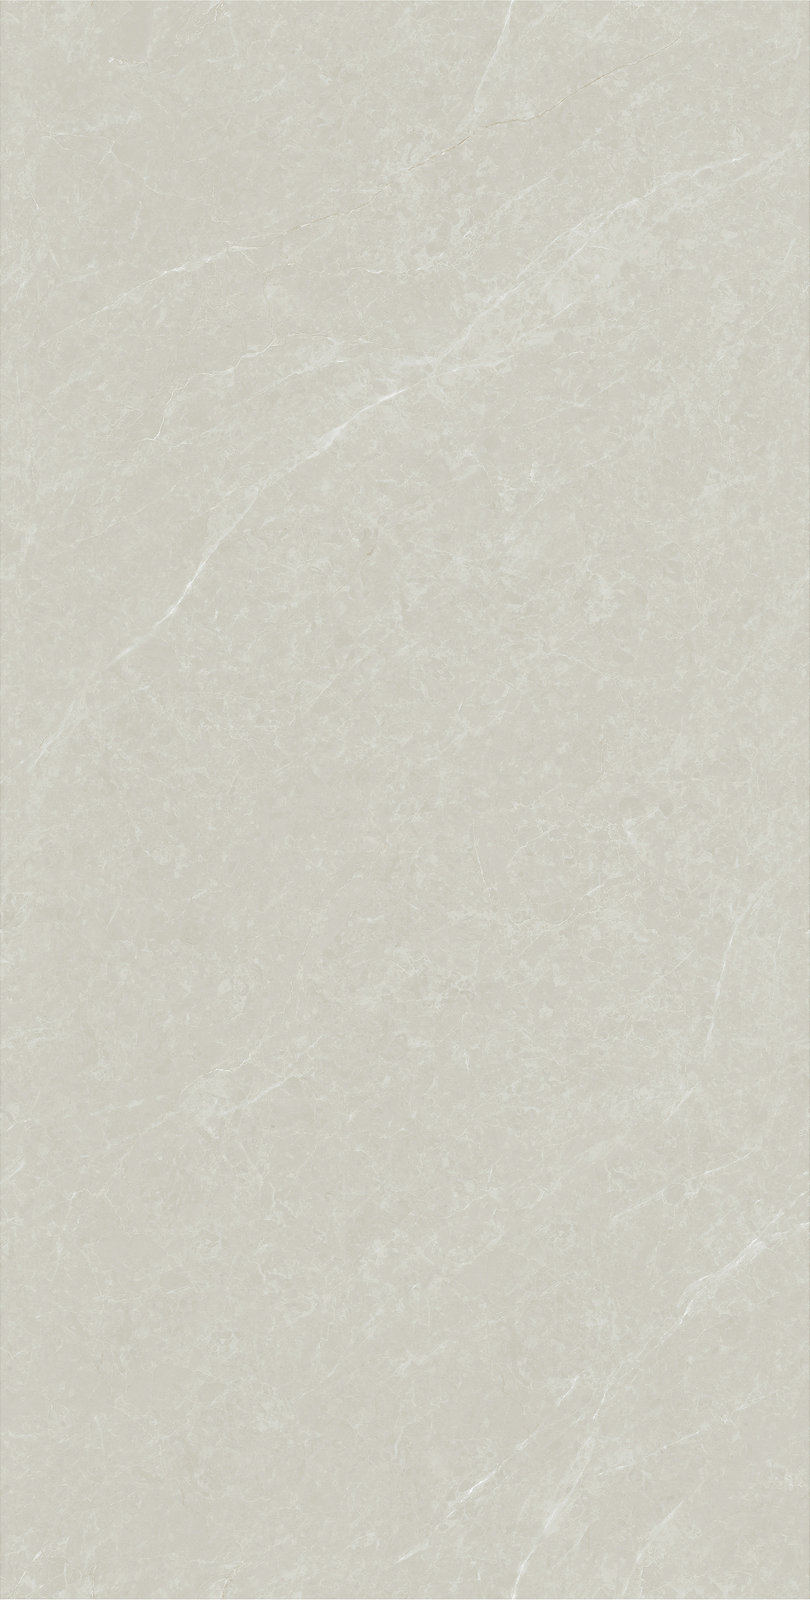 2412DL162A 顶级白玉兰理石产品图